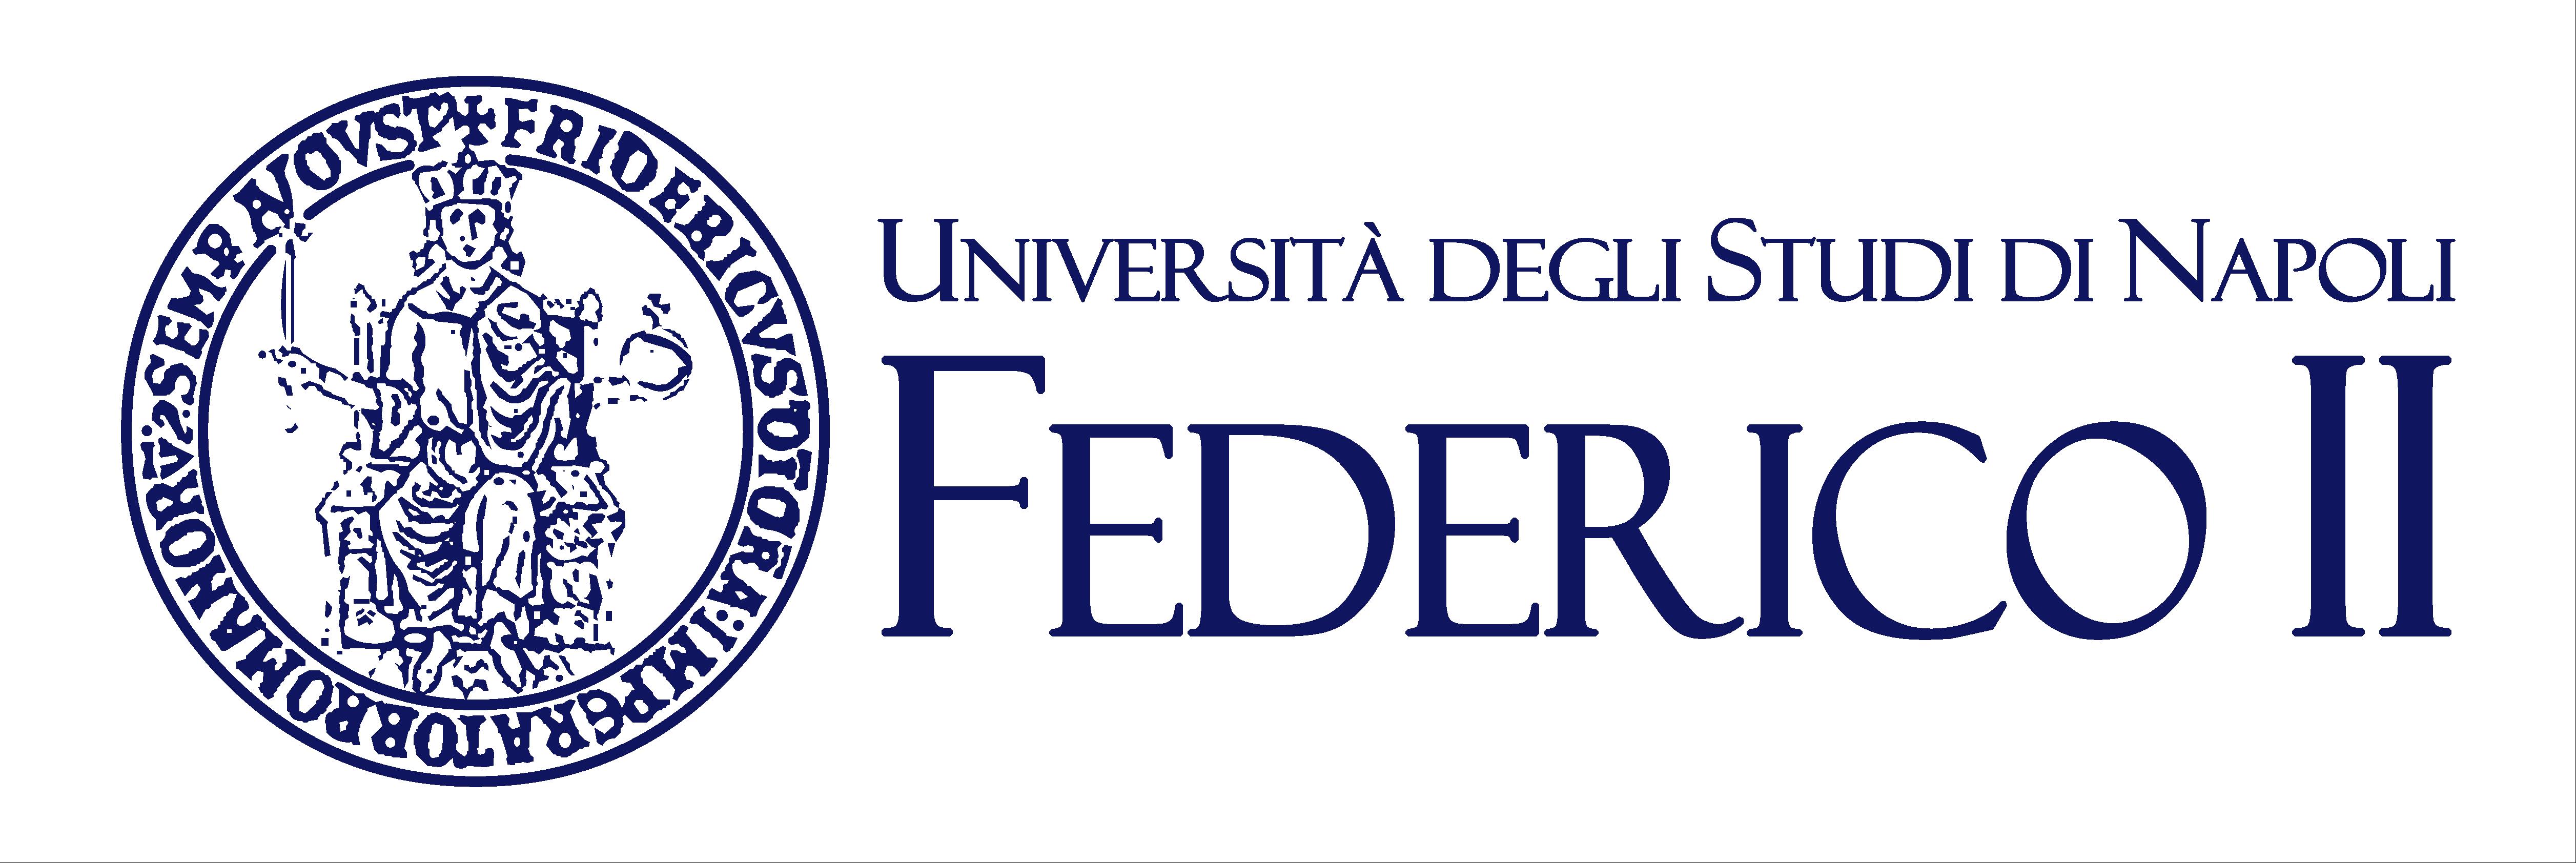 Università degli Studi di Napoli - Federico II Logo photo - 1